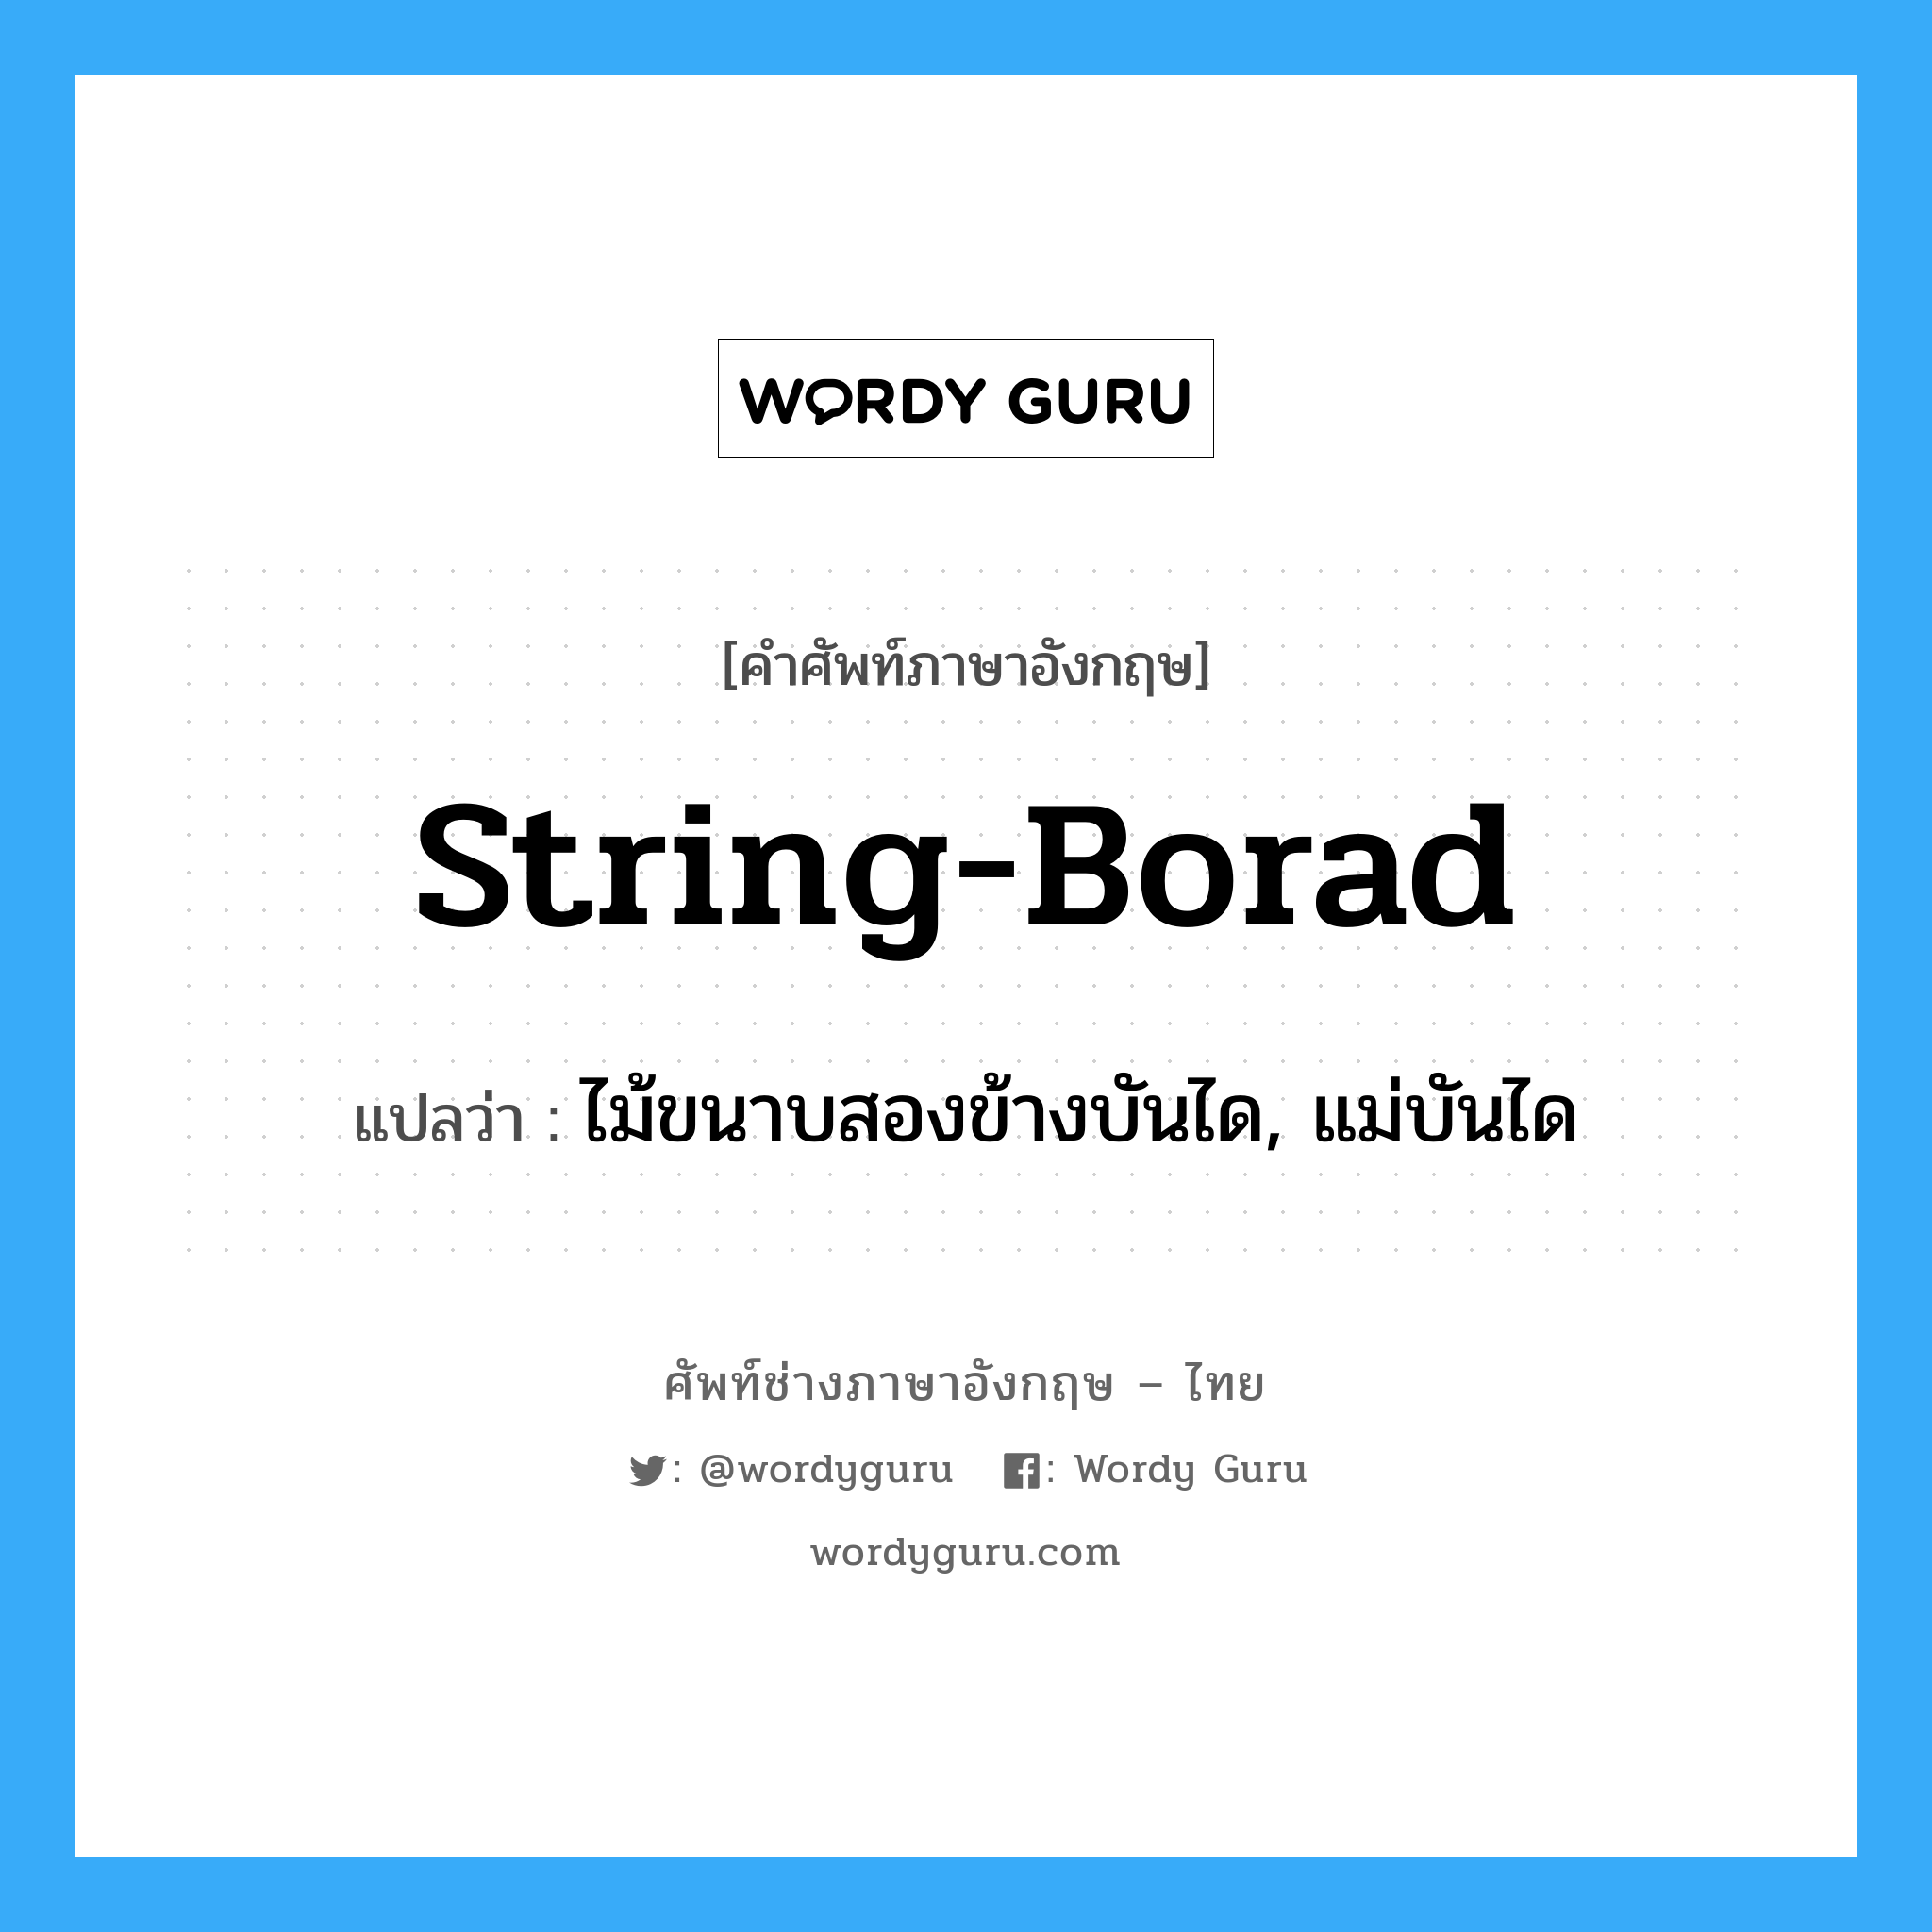 string-borad แปลว่า?, คำศัพท์ช่างภาษาอังกฤษ - ไทย string-borad คำศัพท์ภาษาอังกฤษ string-borad แปลว่า ไม้ขนาบสองข้างบันได, แม่บันได